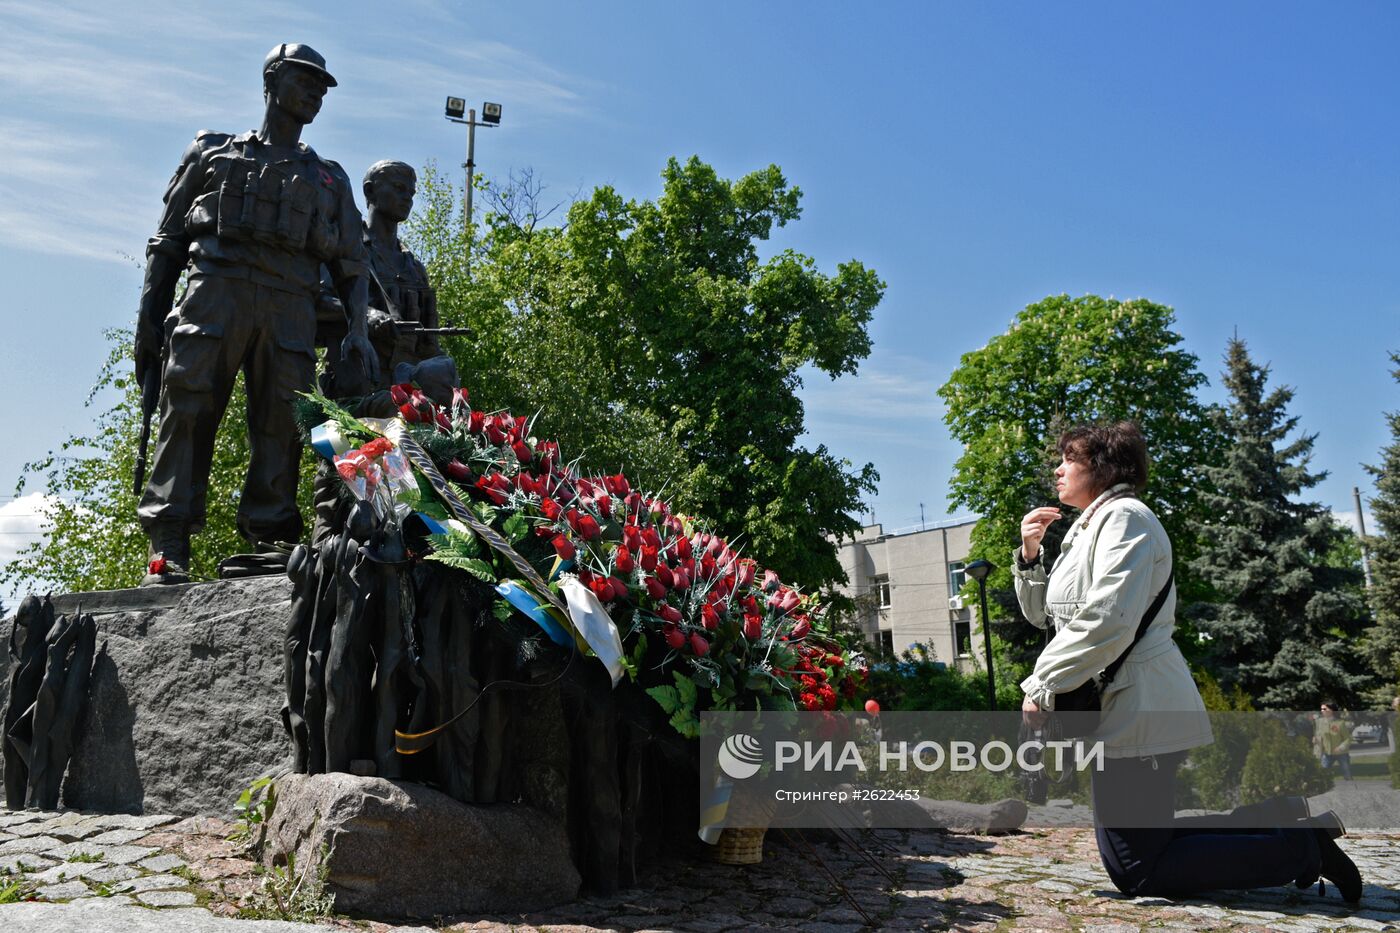 Празднование 70-летия Победы в Великой Отечественной войне 1941-1945 годов на Украине